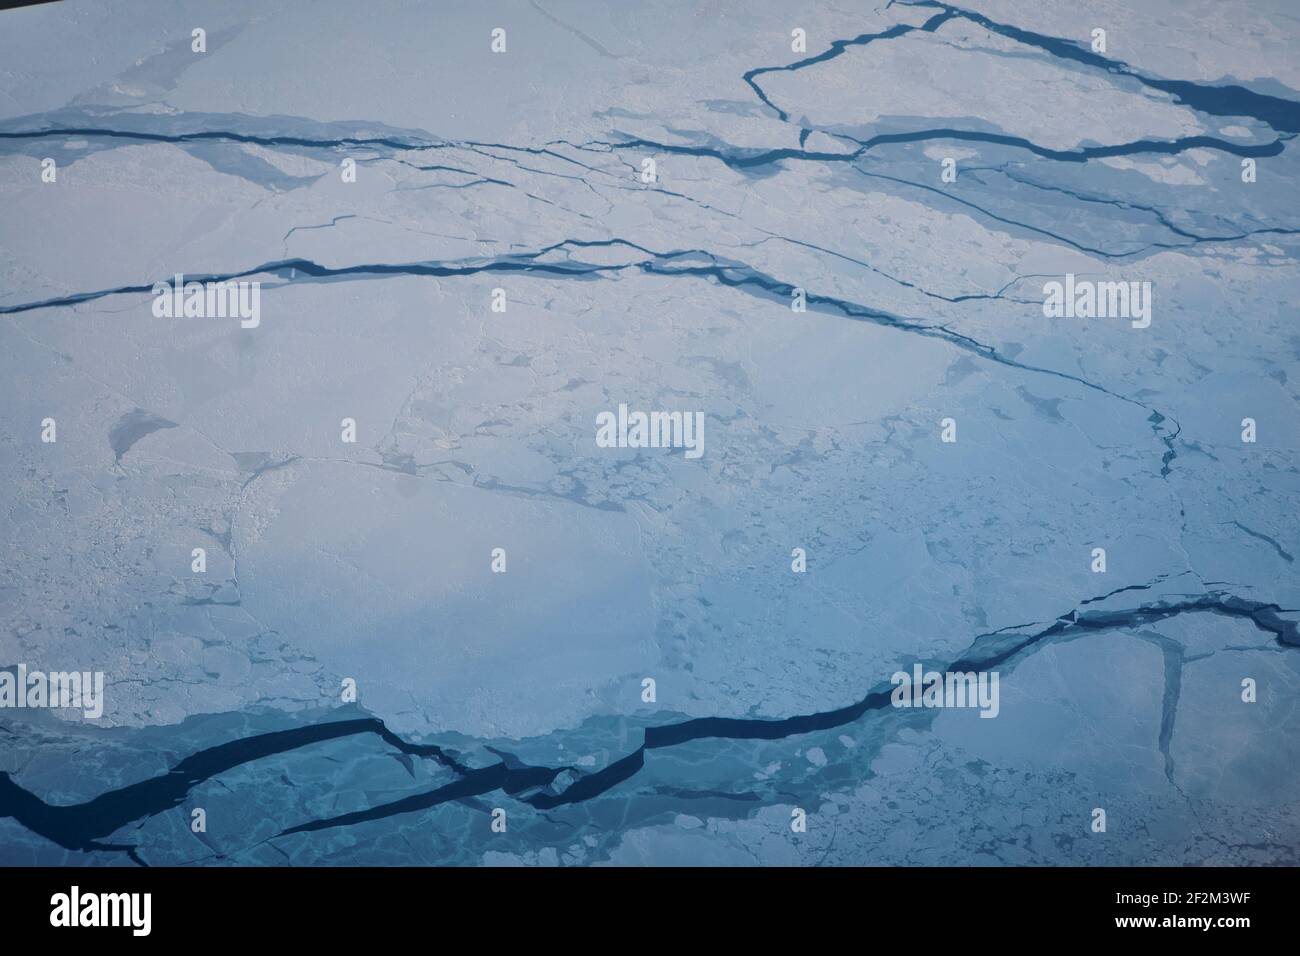 Vue aérienne de la glace de plateau du groenland vue depuis un avion à réaction, Groenland, Royaume du Danemark, Amérique du Nord Banque D'Images